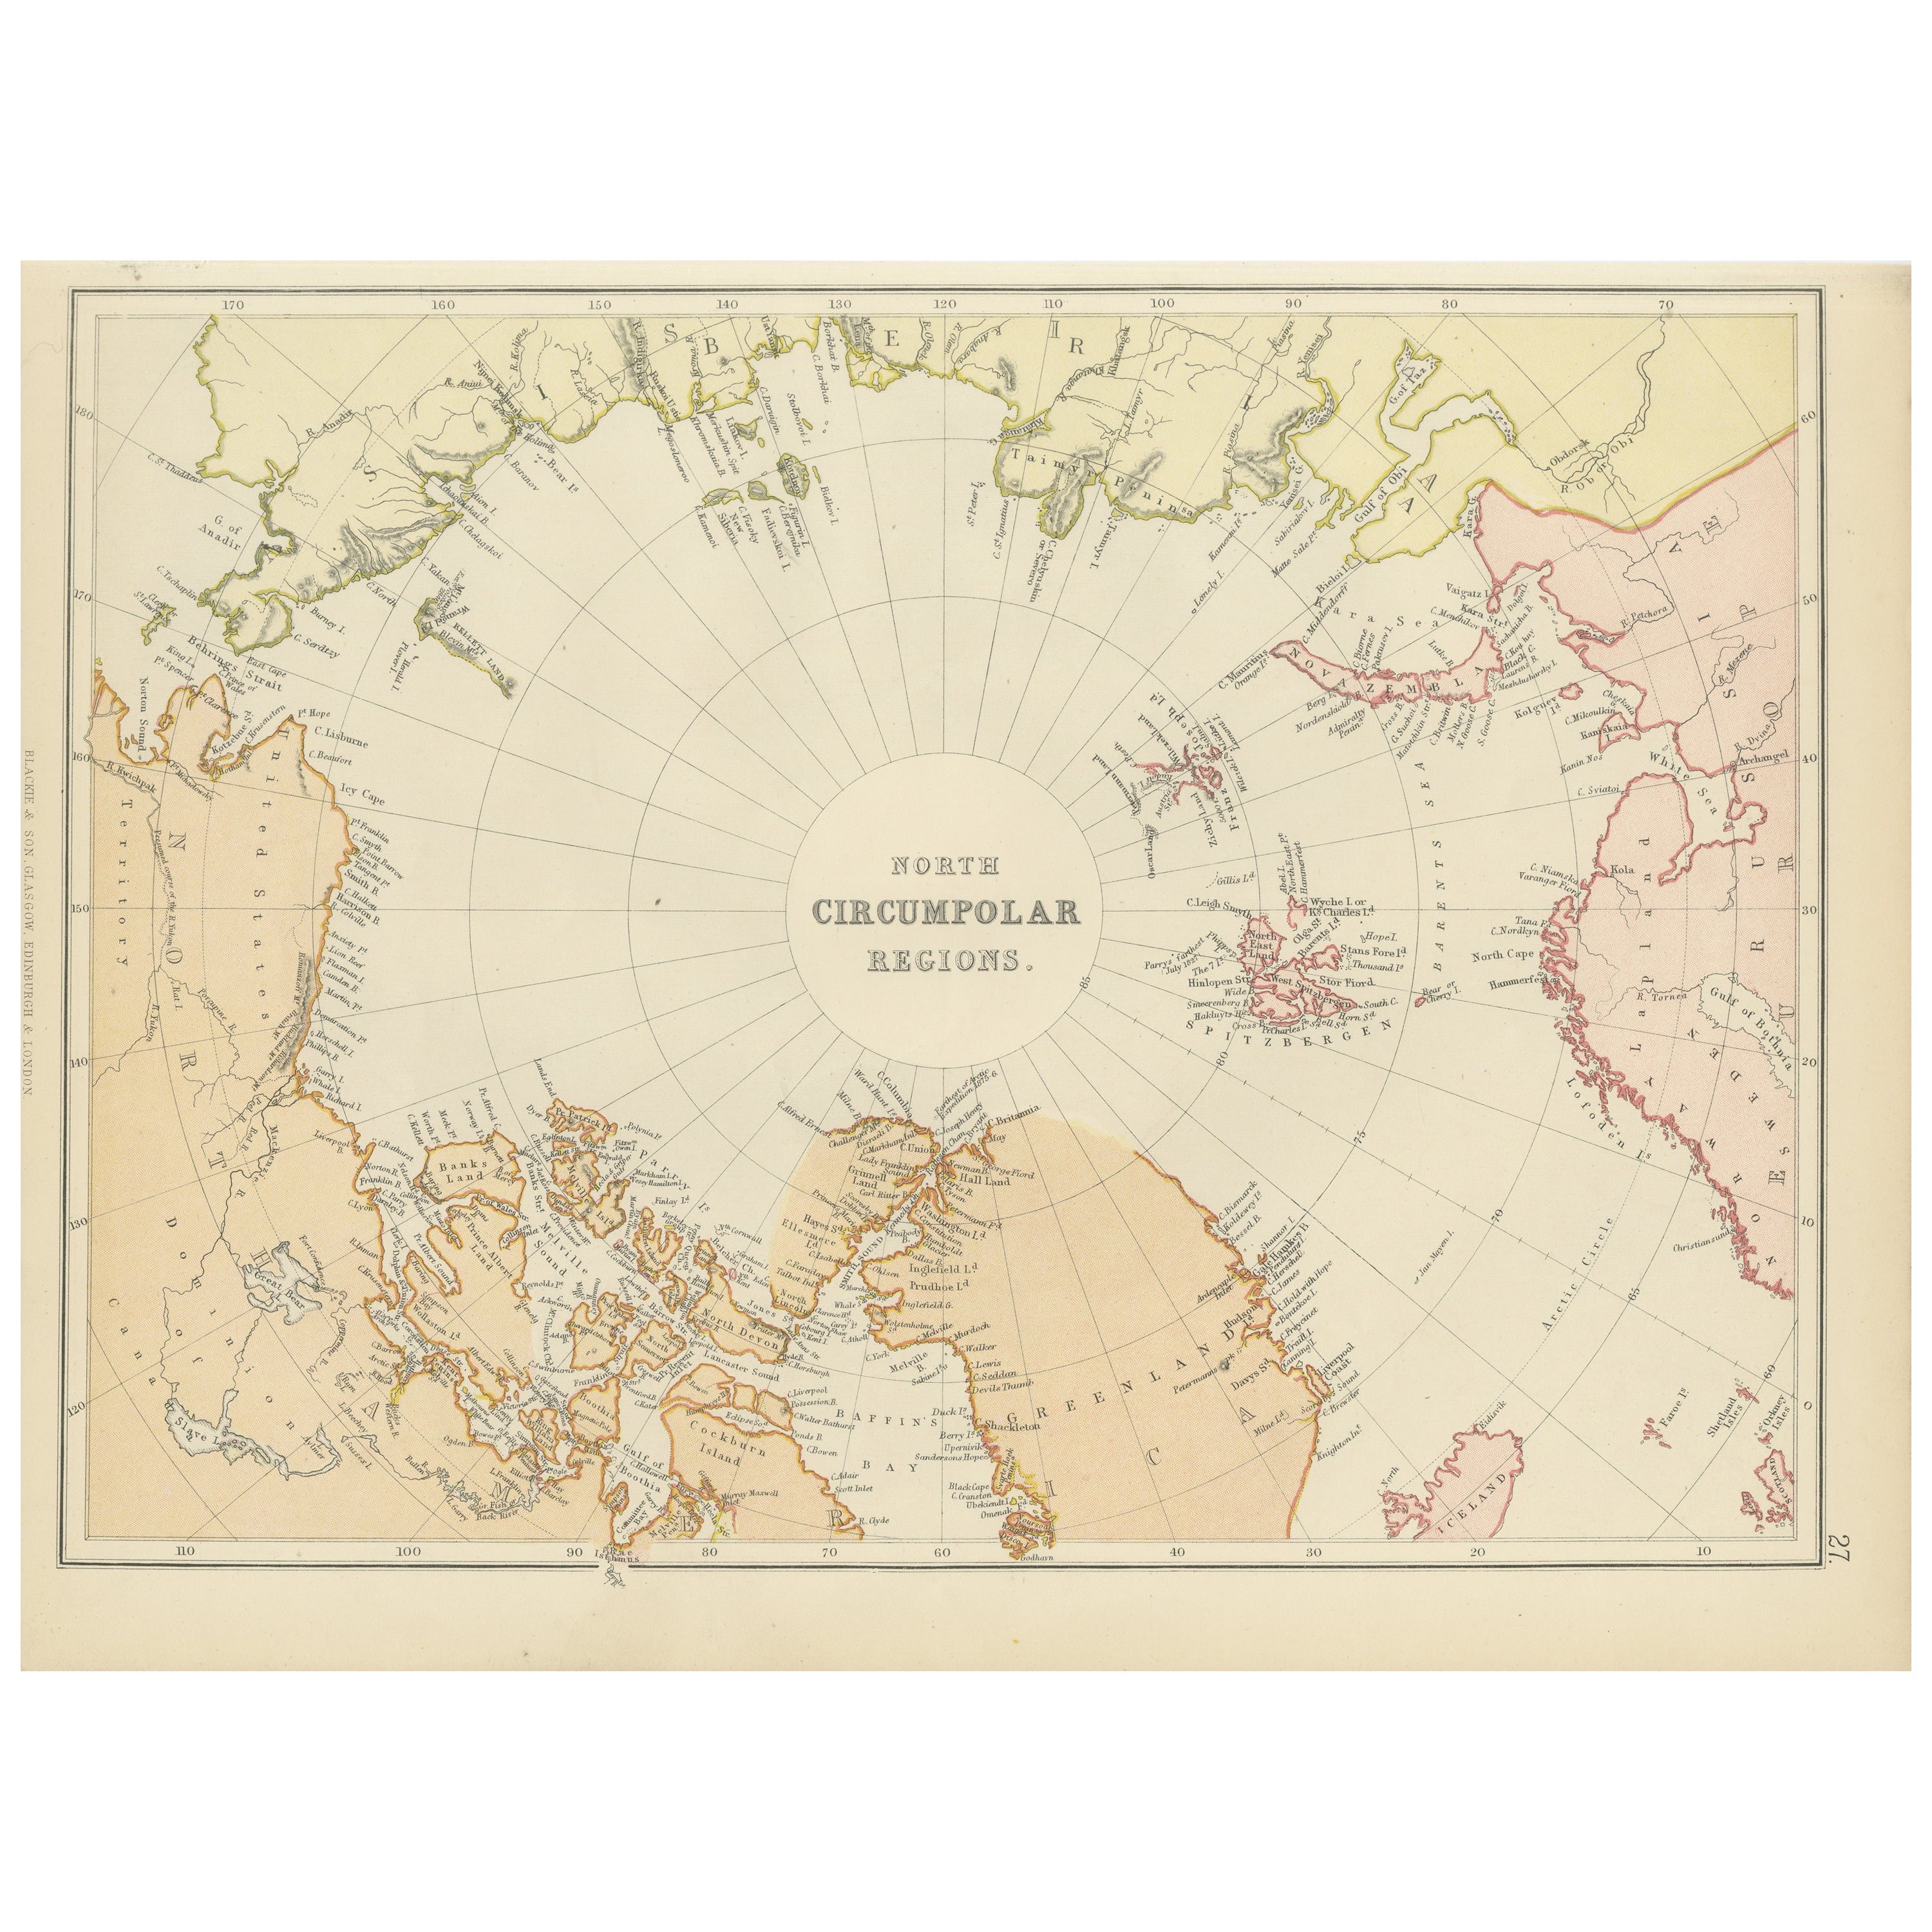 Exploration arctique : une carte originale des régions circulaires nordiques, 1882